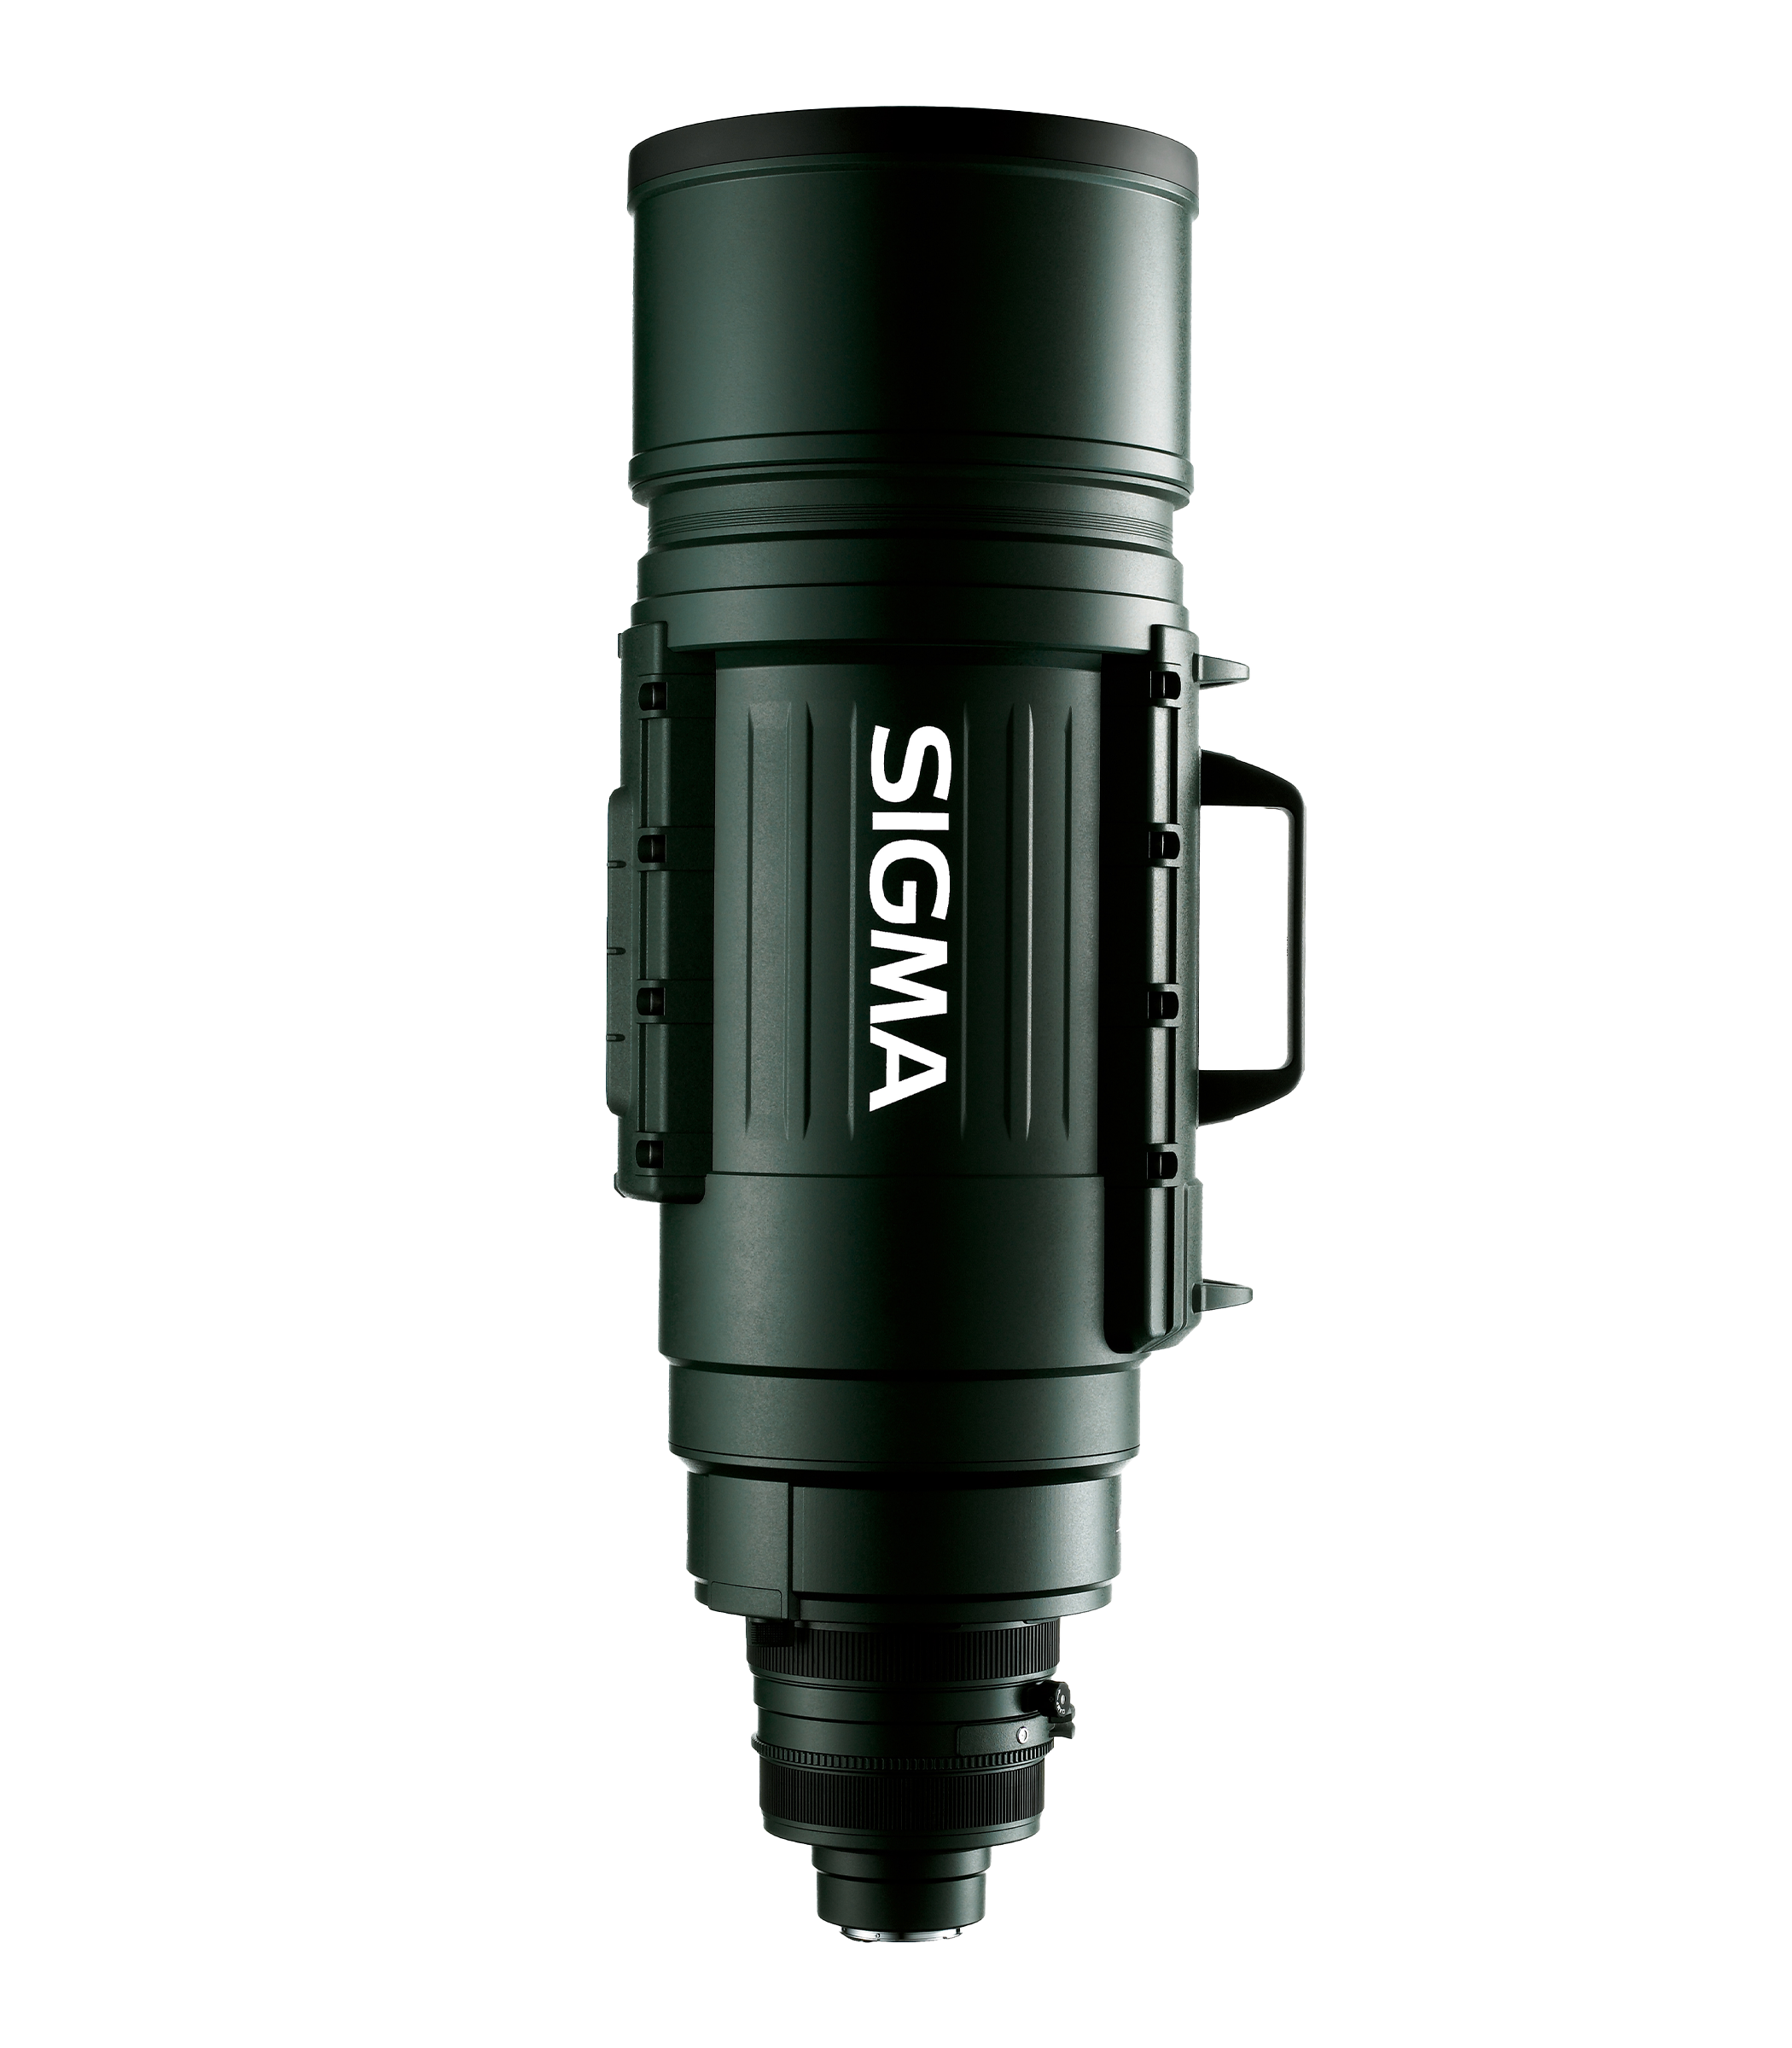 SIGMA 200-500mm F2.8 EX DG APO